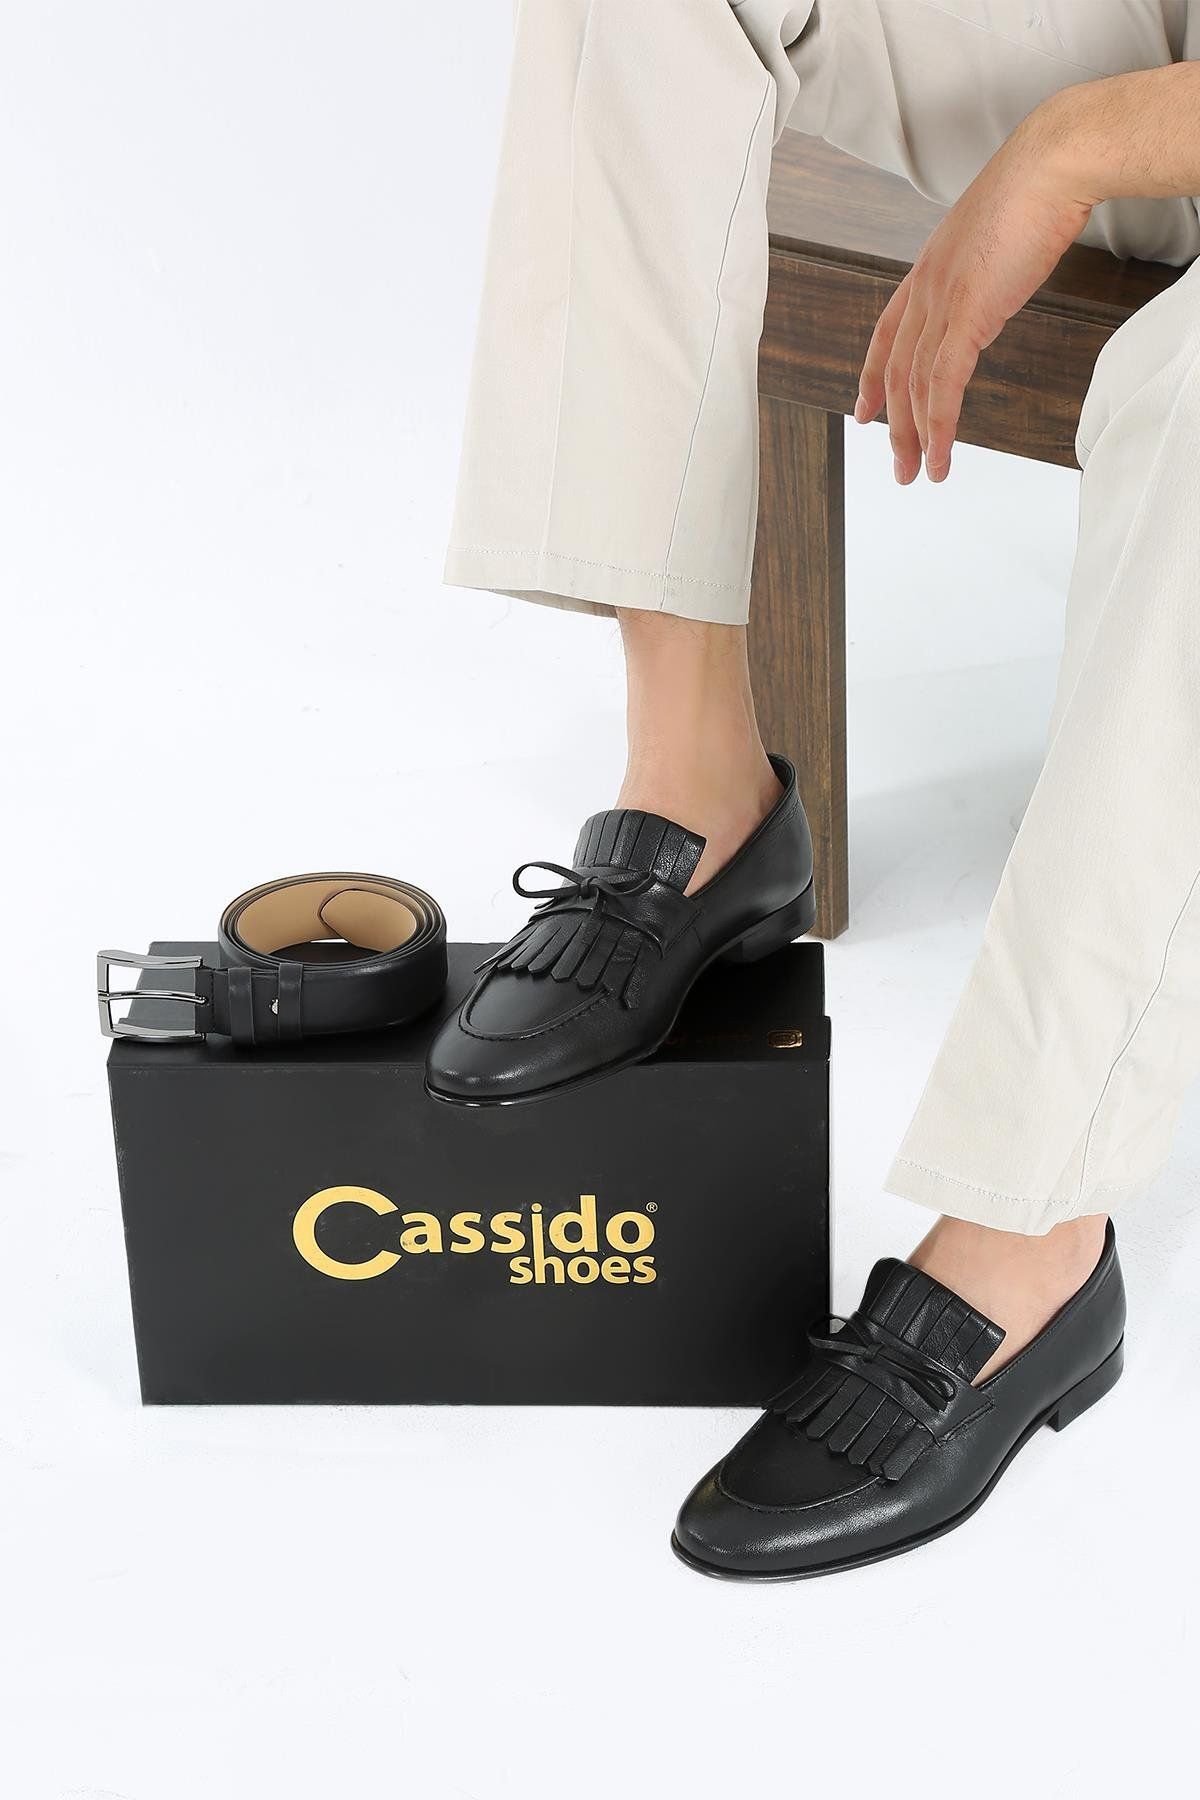 CassidoShoes Siyah Deri Püskül Detaylı Kösele Enjeksiyon Taban Kemer Hediyeli Erkek Klasik Ayakkabı 023-40410